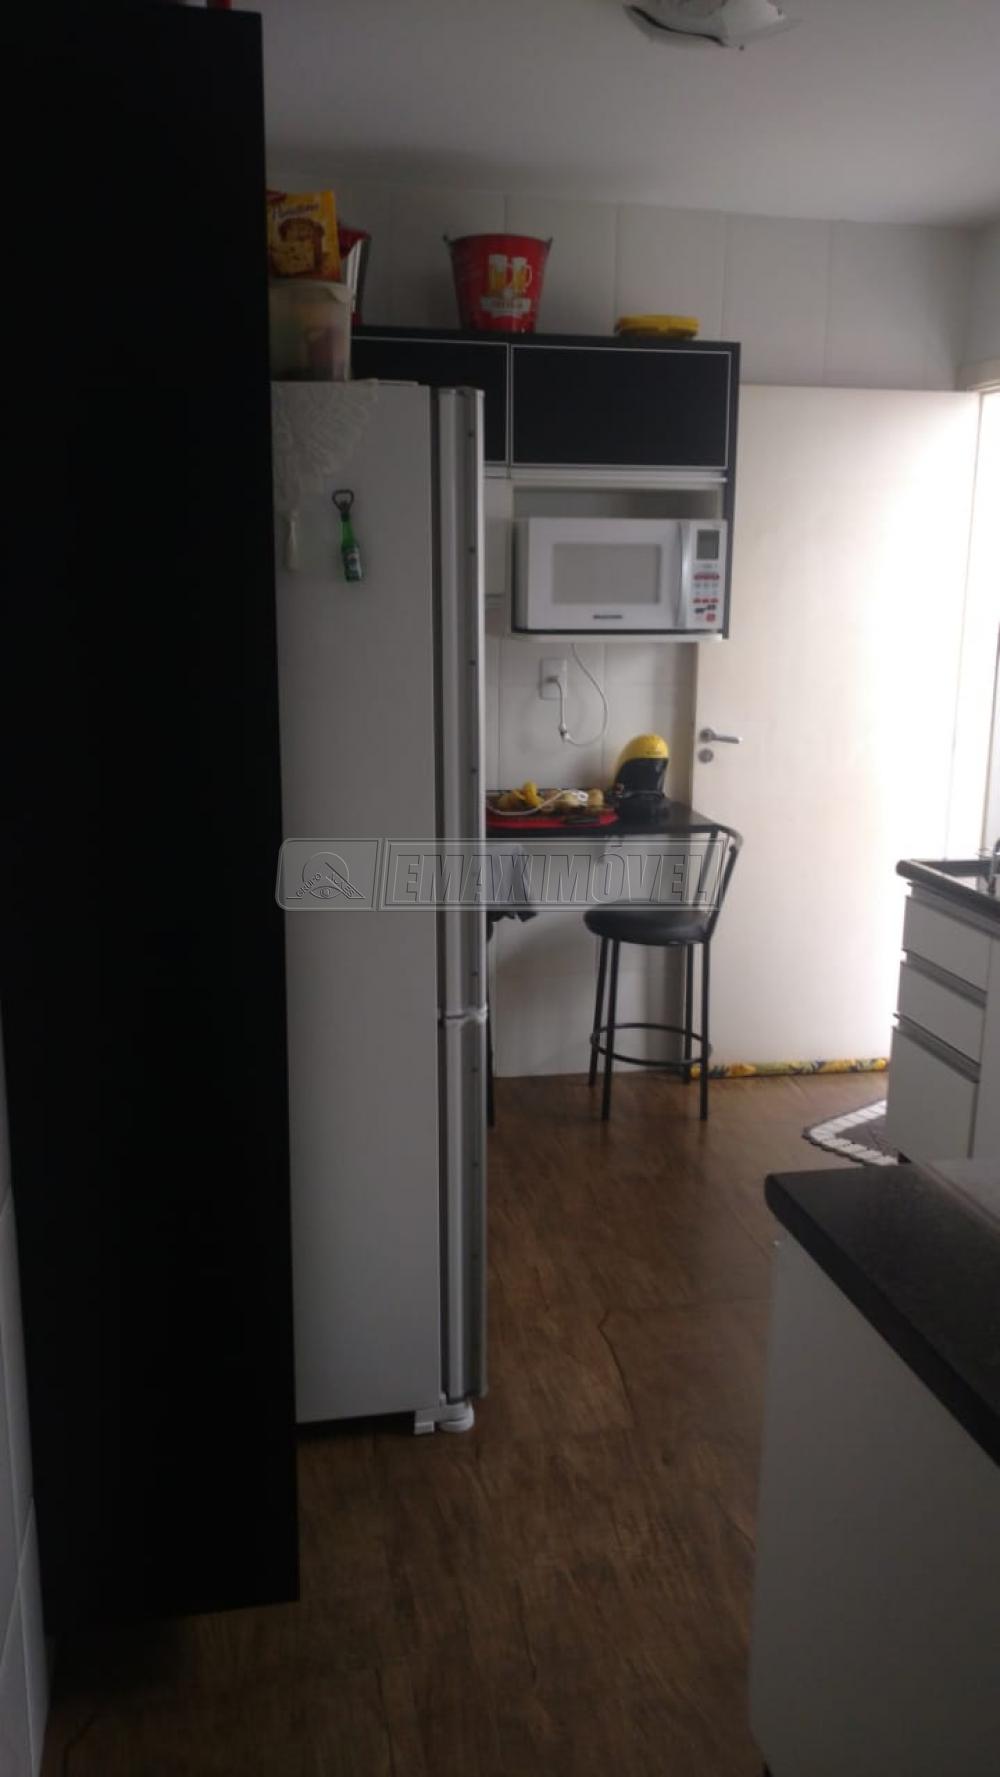 Comprar Casa / em Condomínios em Sorocaba R$ 285.000,00 - Foto 6